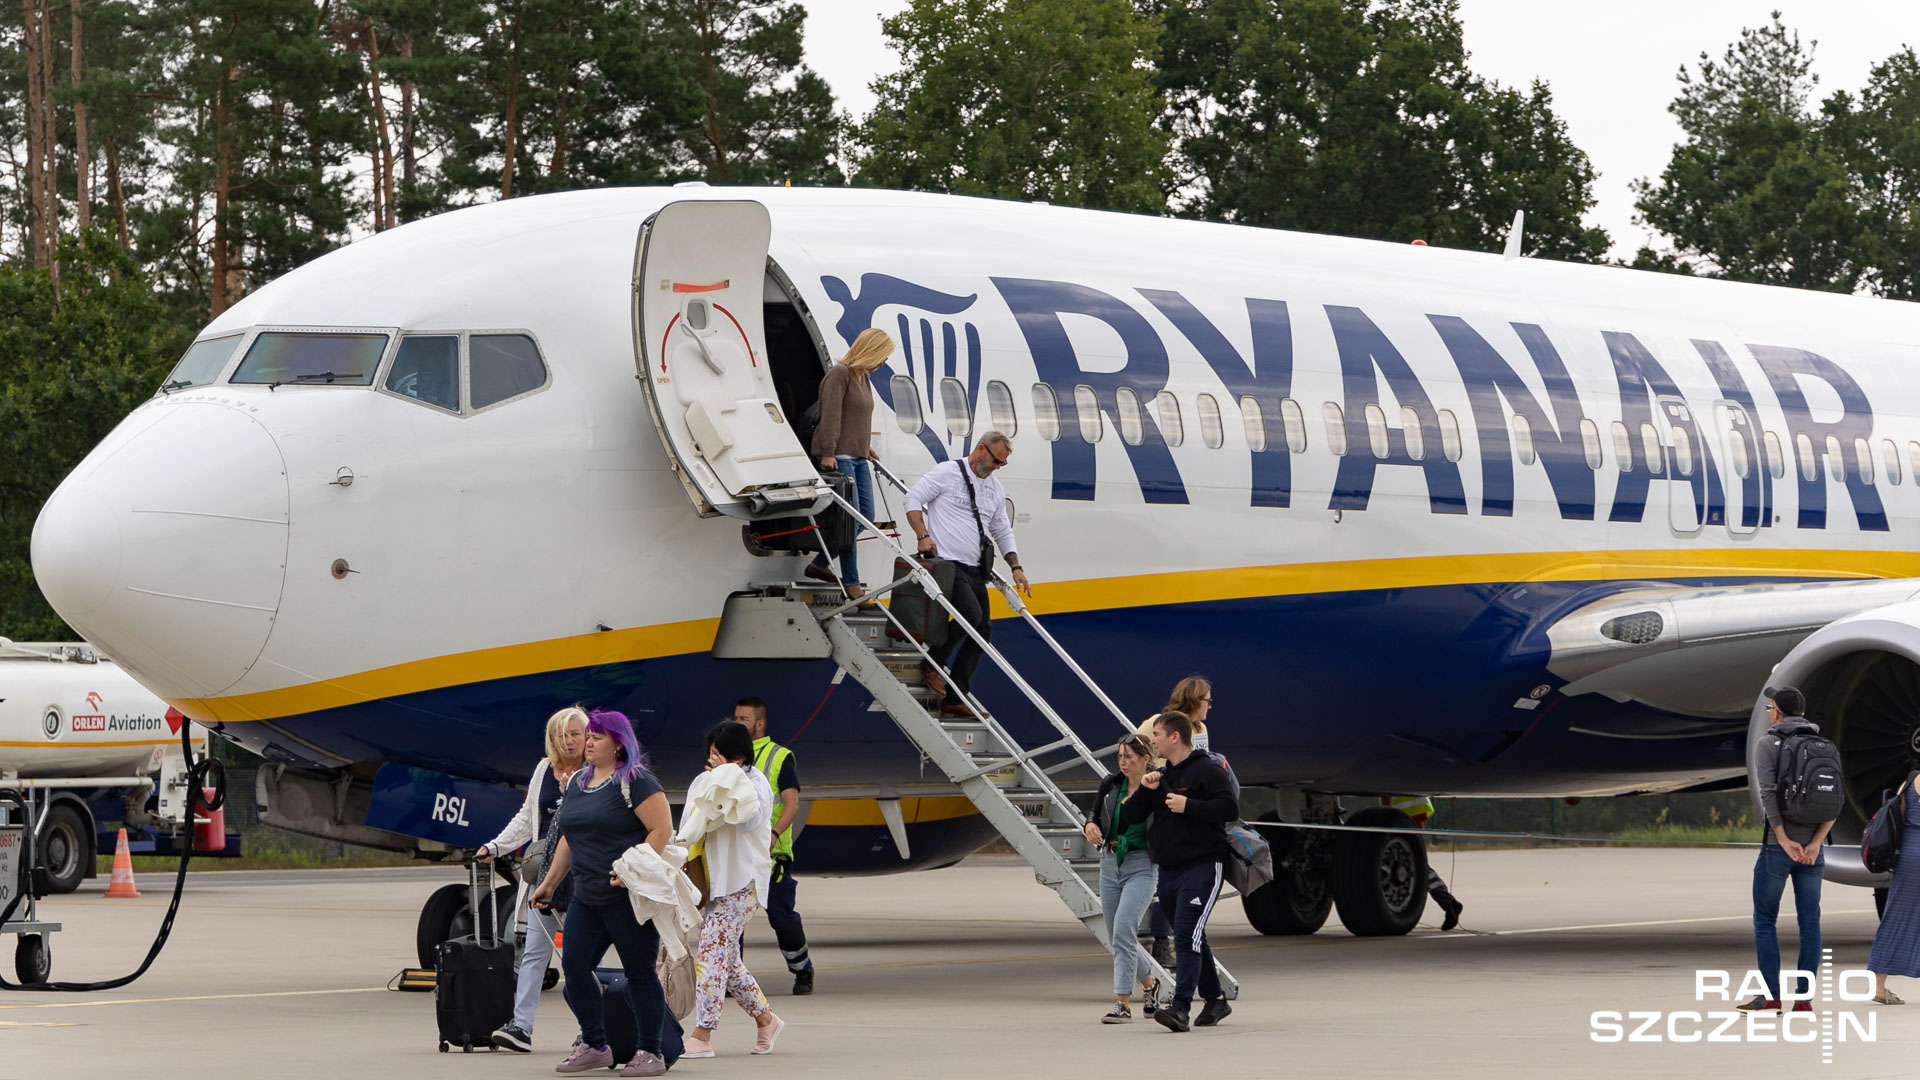 Hiszpański urząd antymonopolowy nałożył rekordową karę na cztery linie lotnicze m.in. za wprowadzanie opłat za bagaż podręczny. Wśród nich są Ryanair, Easyjet, Vueling i Volotea, które łącznie muszą zapłacić ponad 150 milionów euro. To pierwsza tak wysoka kara w Europie.